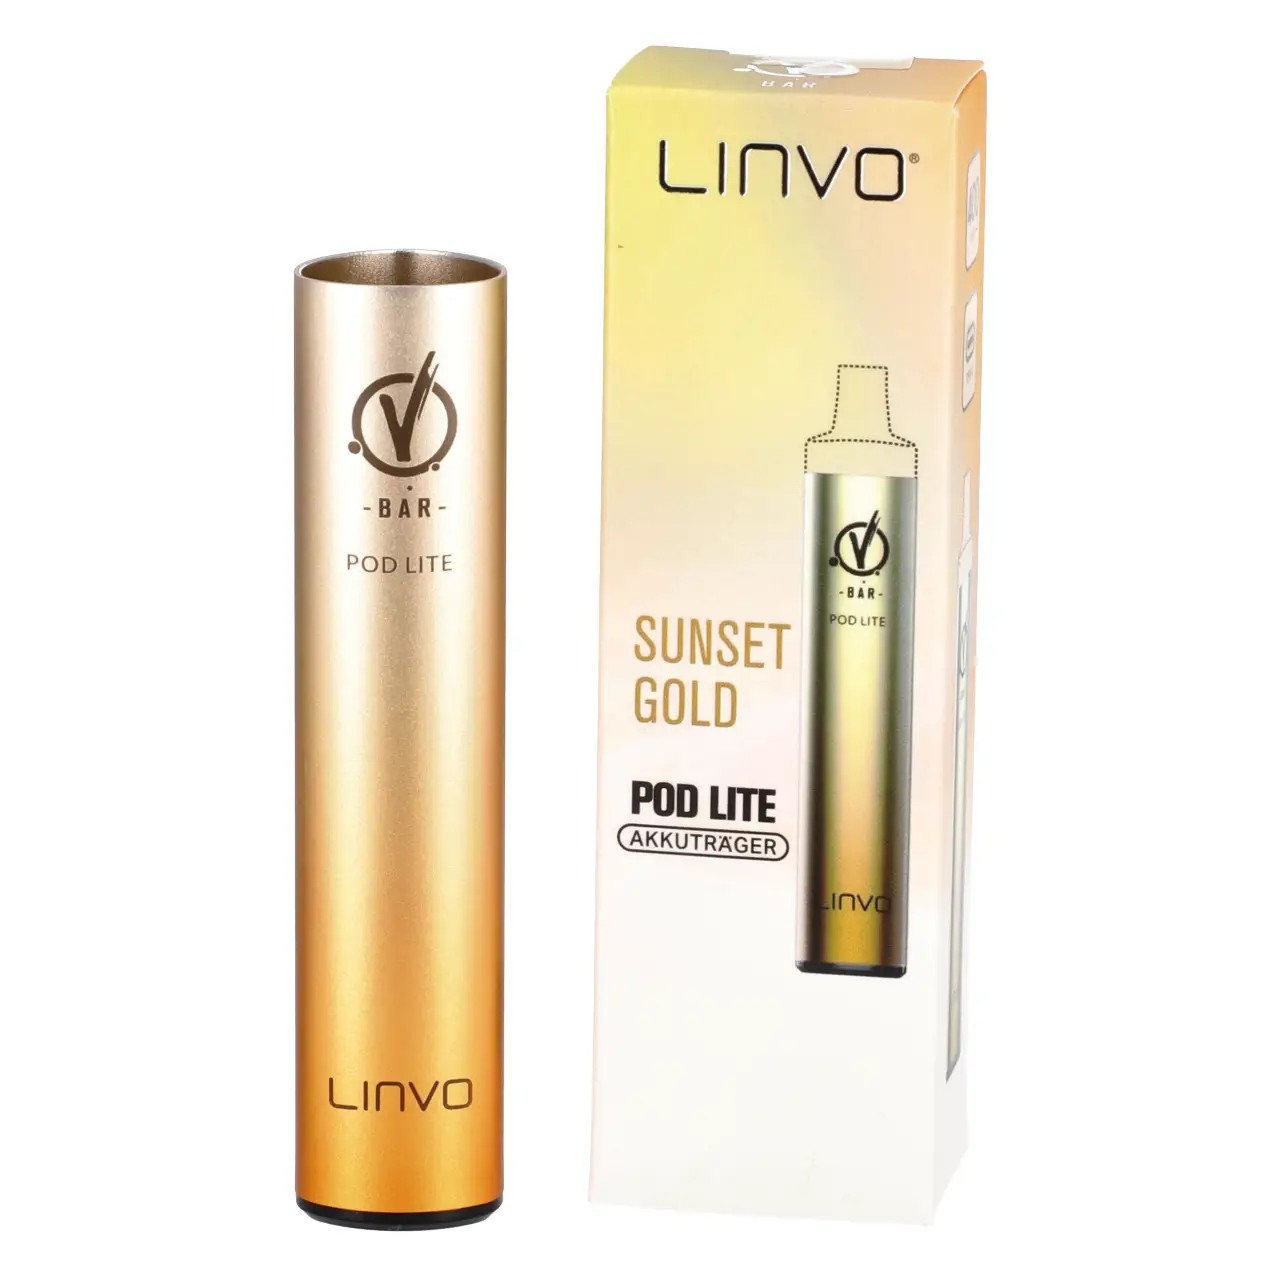 Linvo Pod Lite Akkuträger für Prefilled Pods in der Farbe Sunset Gold